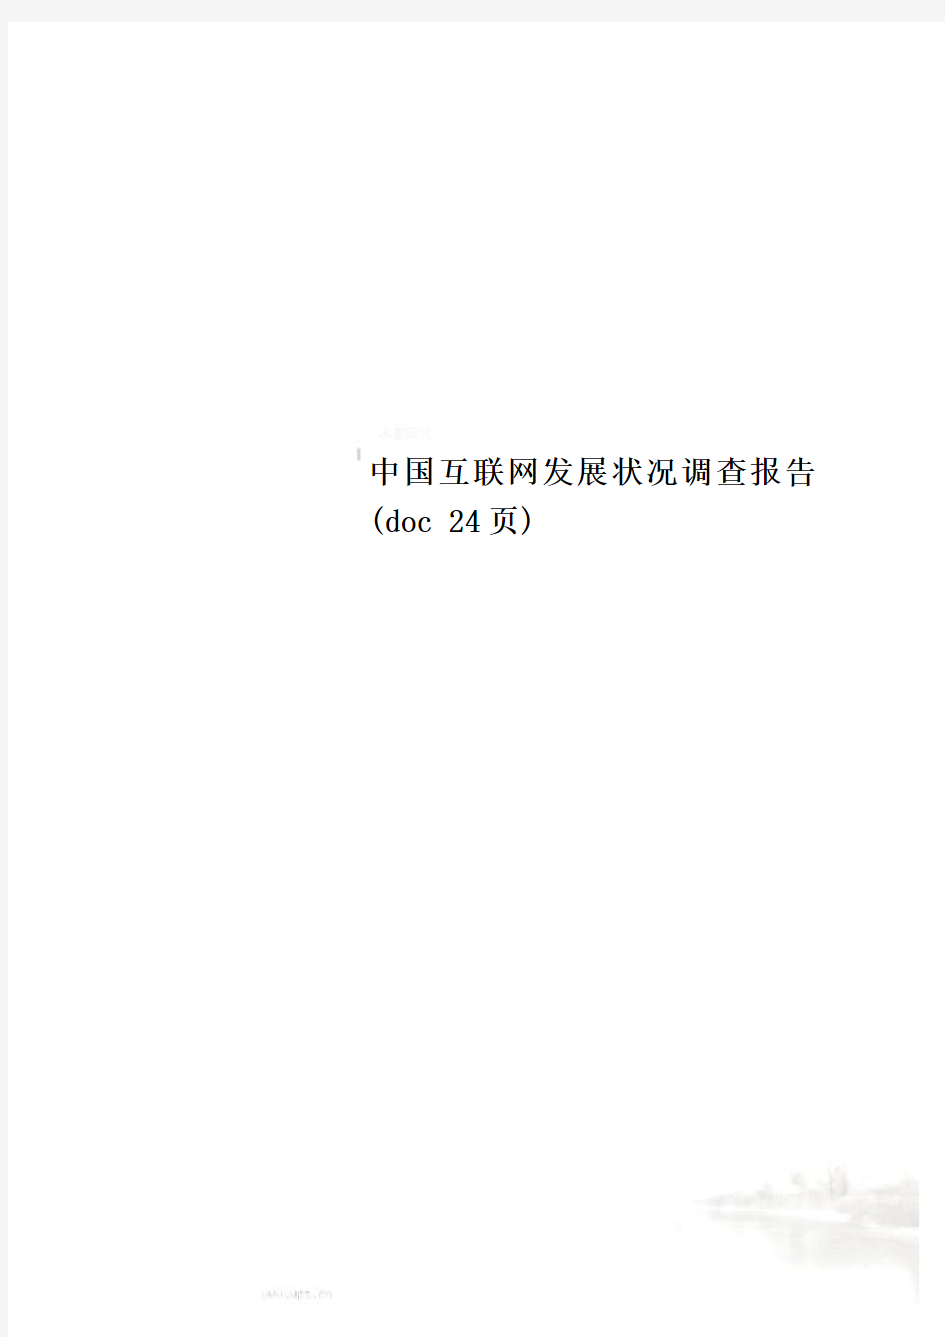 中国互联网发展状况调查报告(doc 24页)